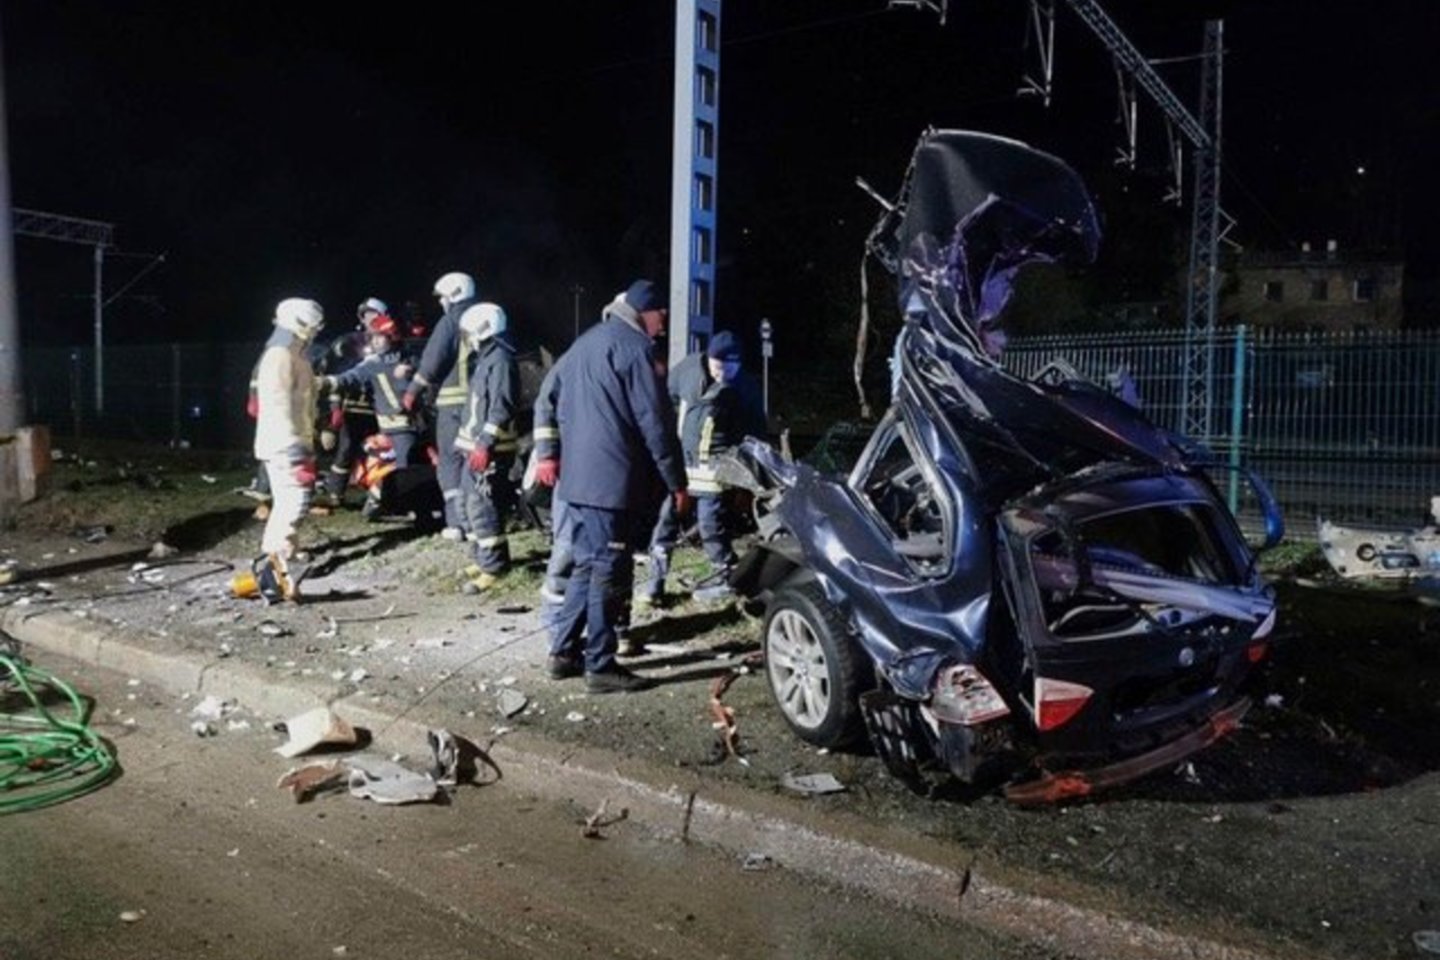  BMW didžiuliu greičiu lėkęs, mirtinos avarijos sukėlimu kaltinamas 19-metis kaunietis L. Kindurys stojo prieš teismą. <br> Kauno policijos nuotr. 